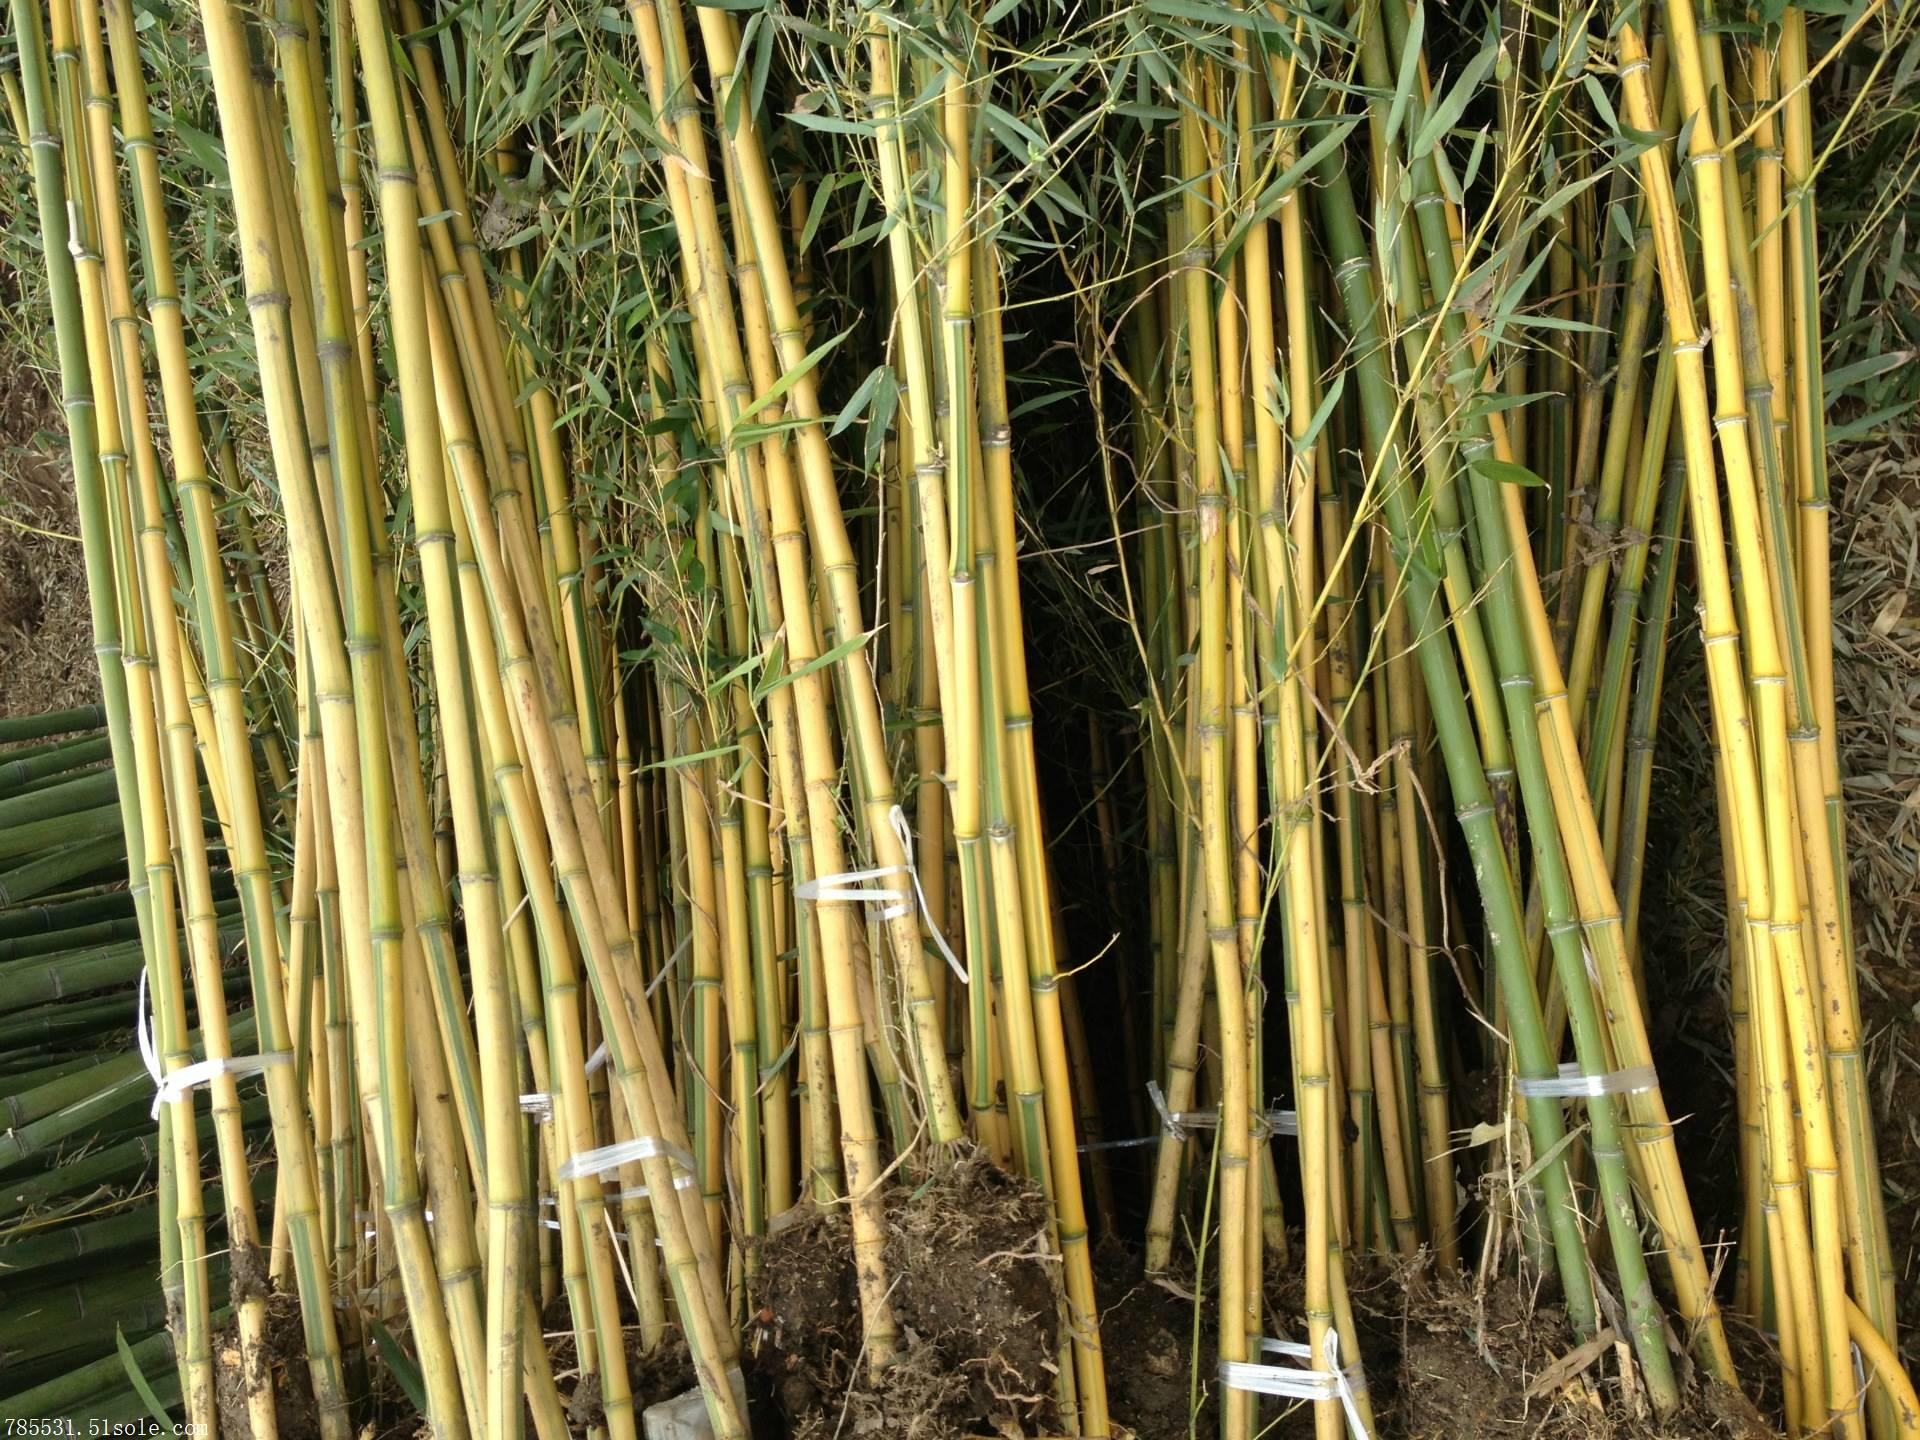 陕西竹子 西安竹子 竹子有哪些优点和用途